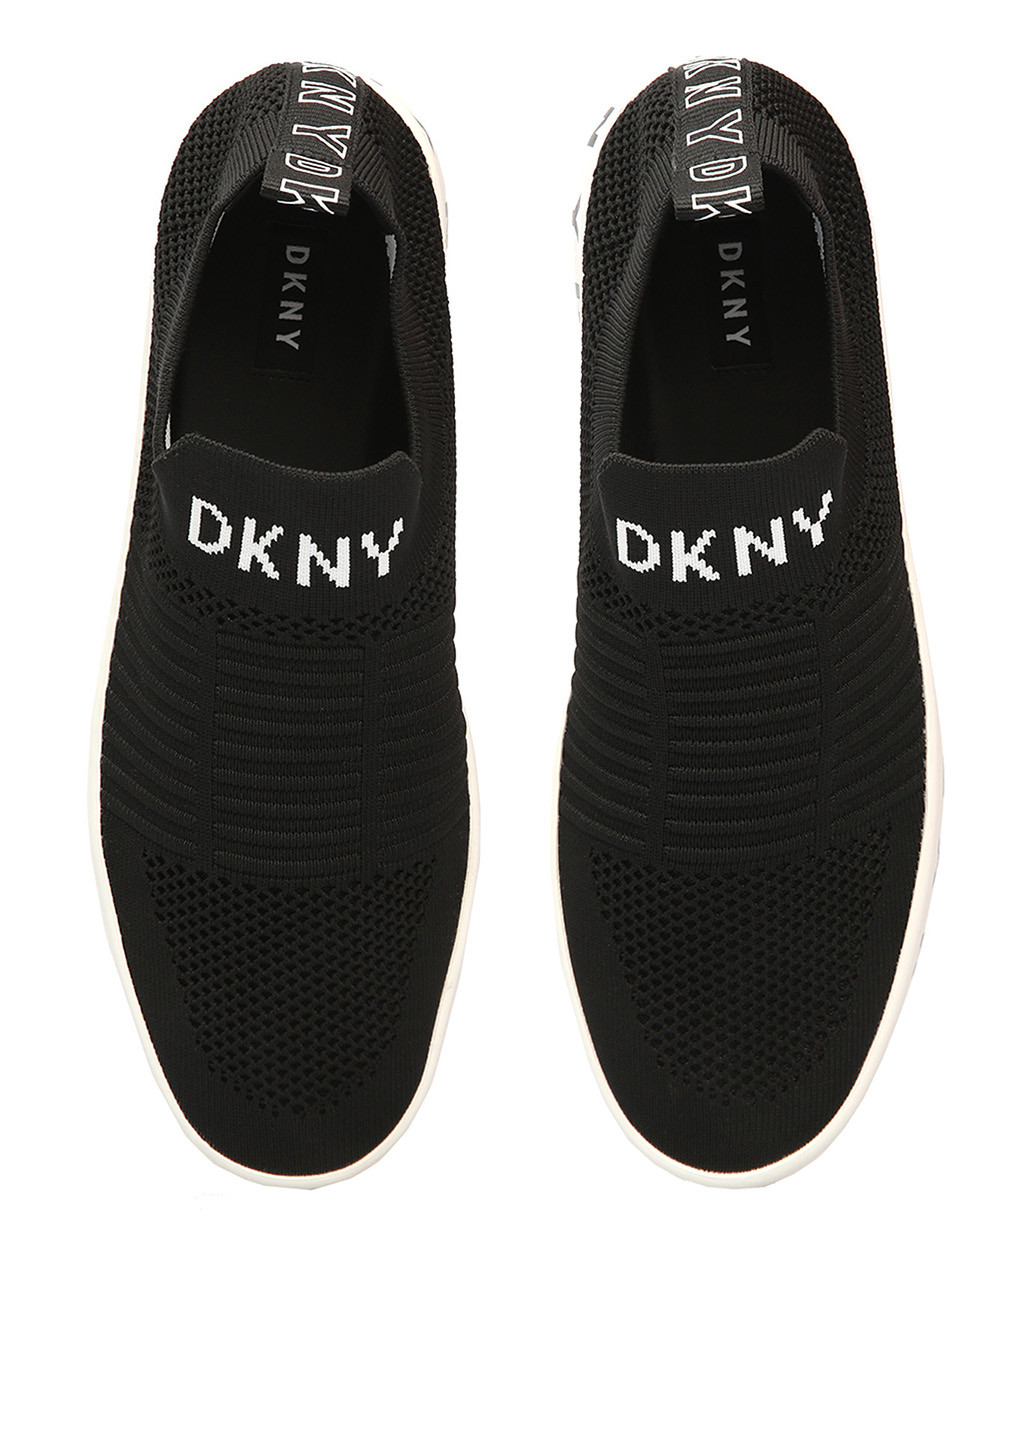 Сліпони DKNY (182479074)